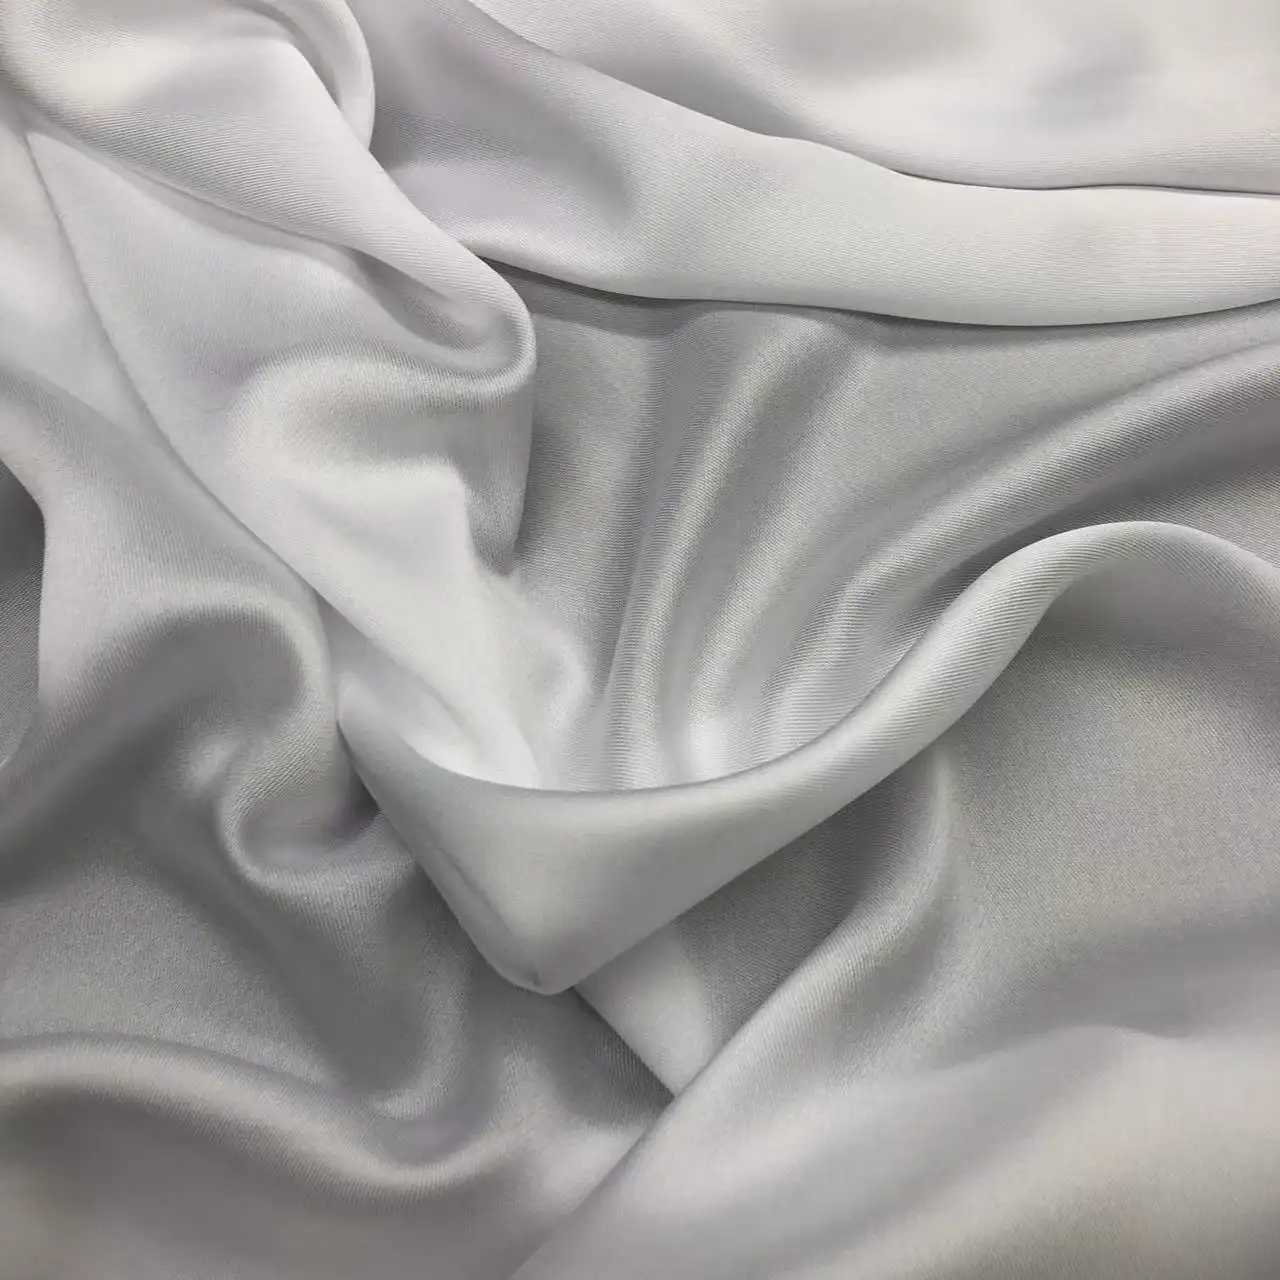 ผ้าไหมทอลายทแยงสีขาว85GSM สำหรับการพิมพ์ระเหิด/พรีเมี่ยมโพลีเอสเตอร์ไหมสิ่งทอลายทแยงสำหรับผ้าพันคอ/